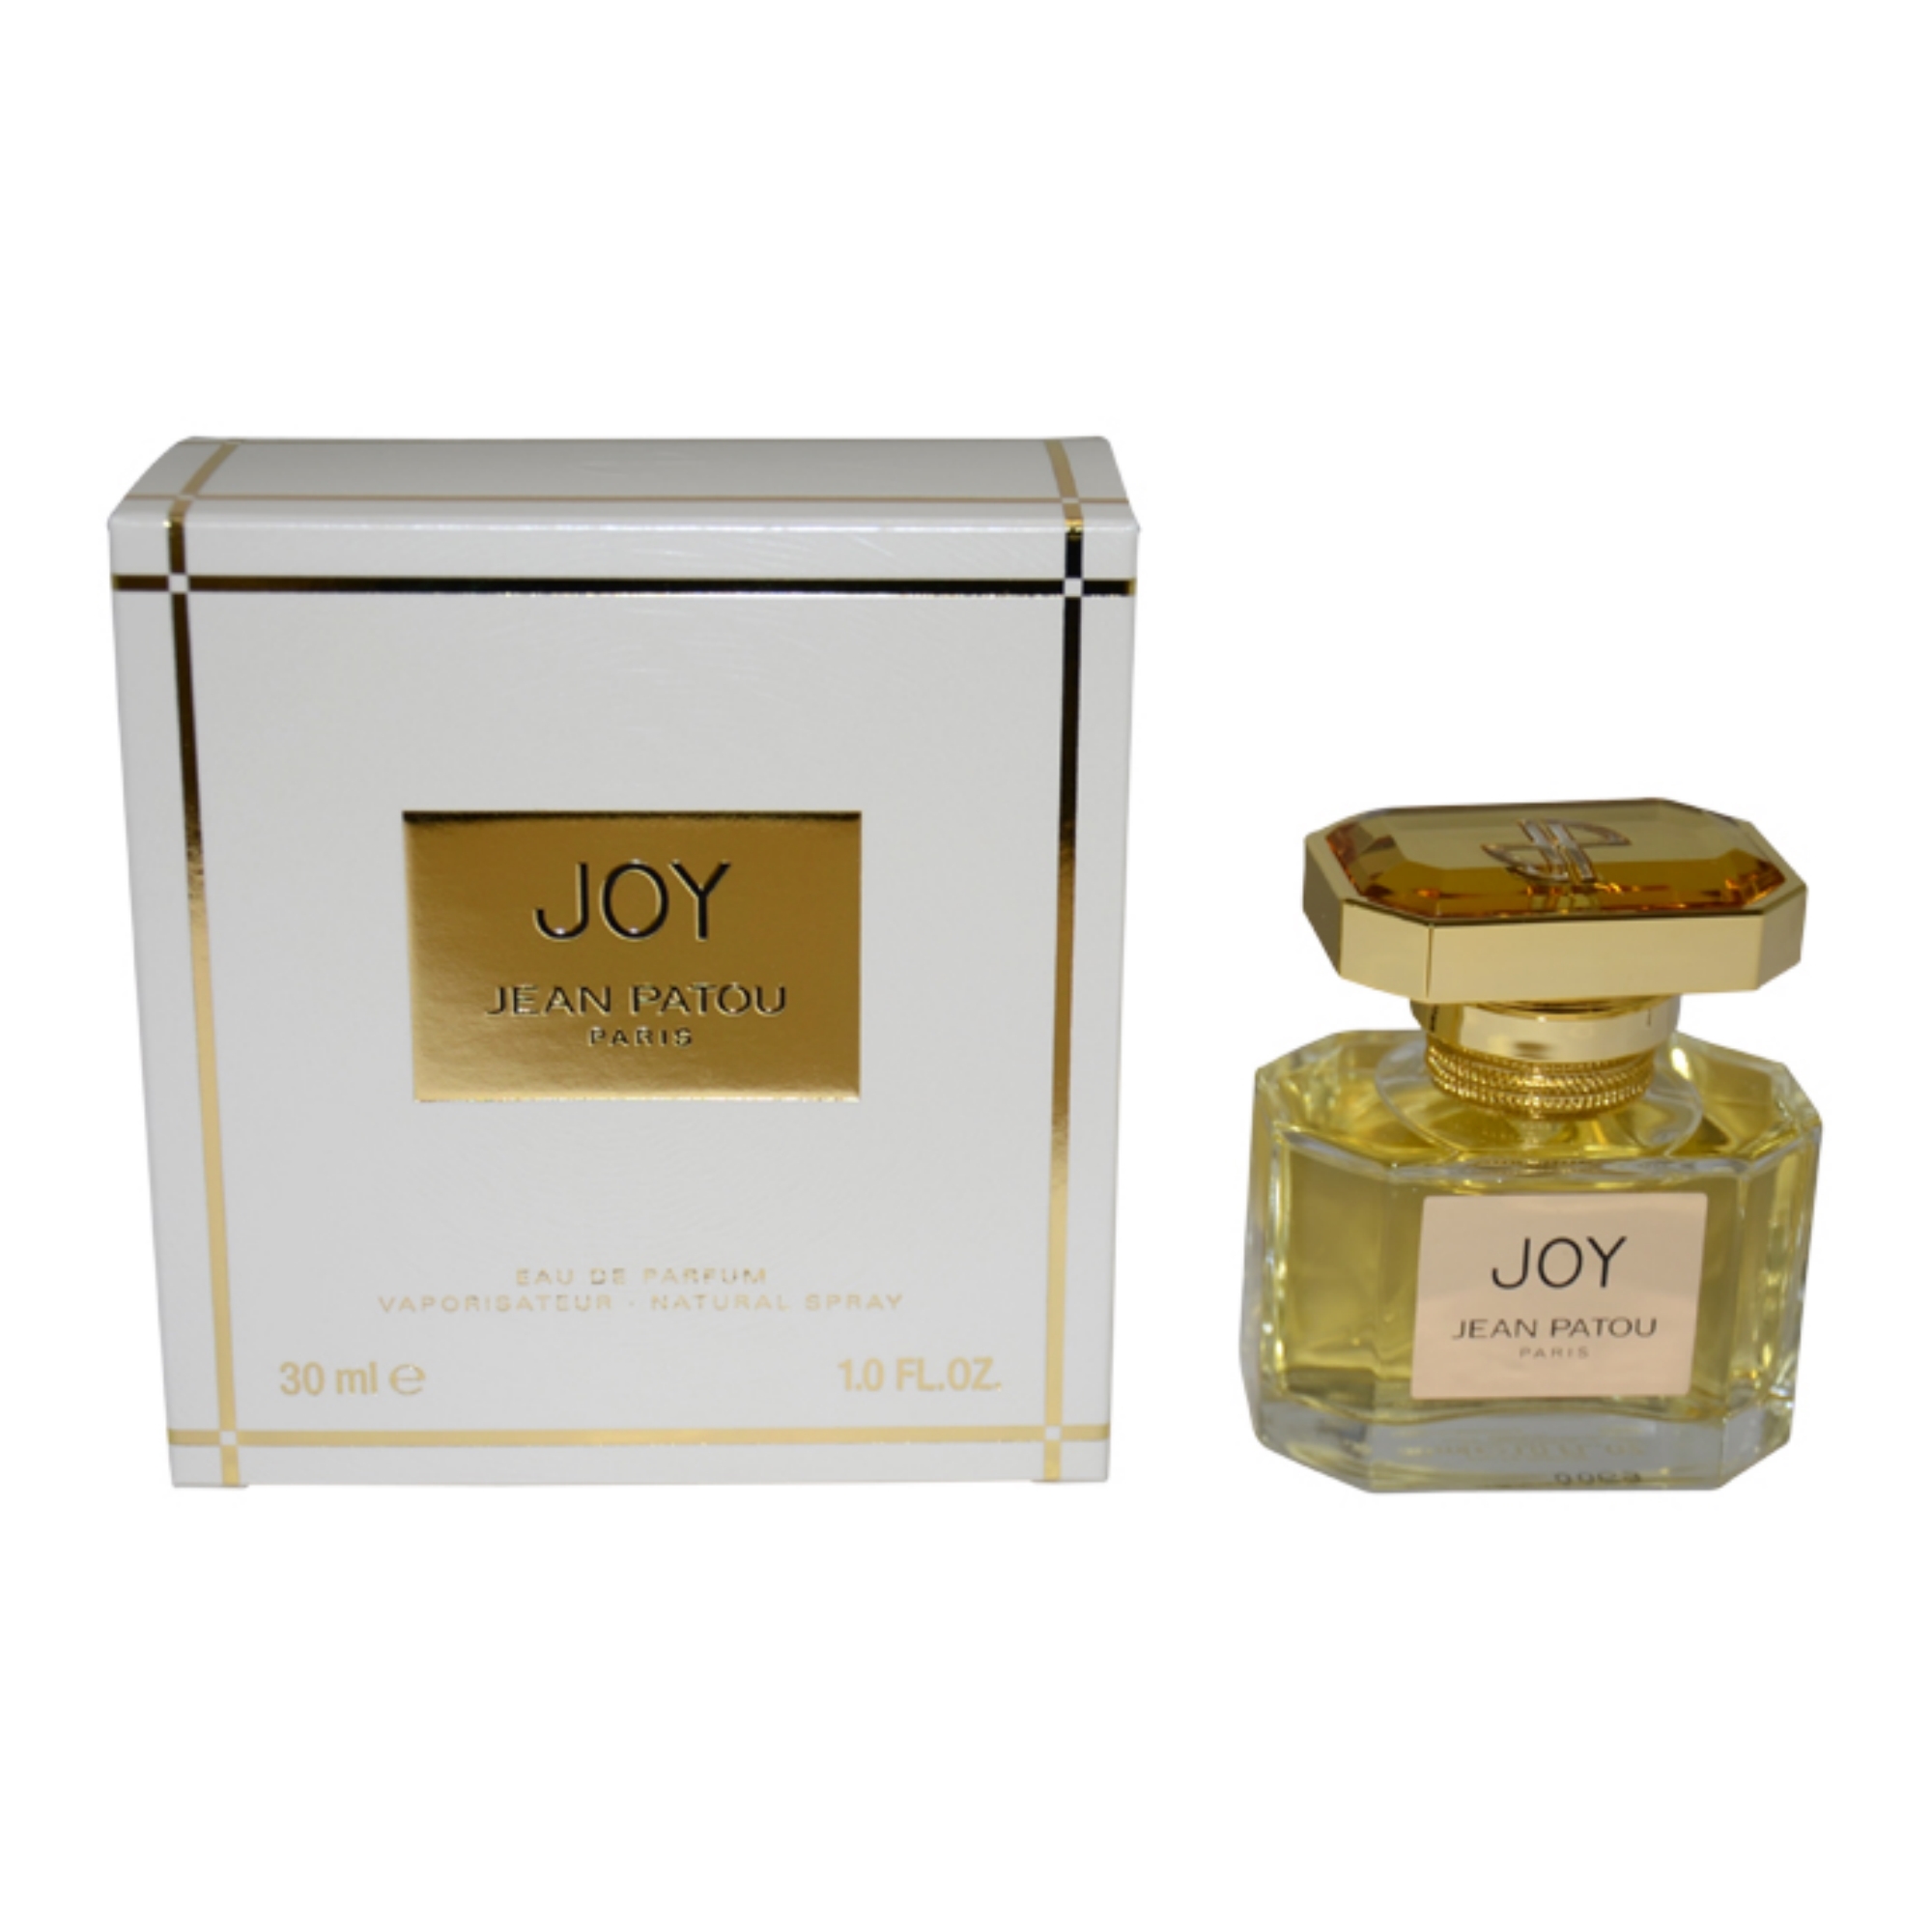 Joy by Jean Patou for Women - 1 oz EDP Spray | Shop Your Way: Online ...